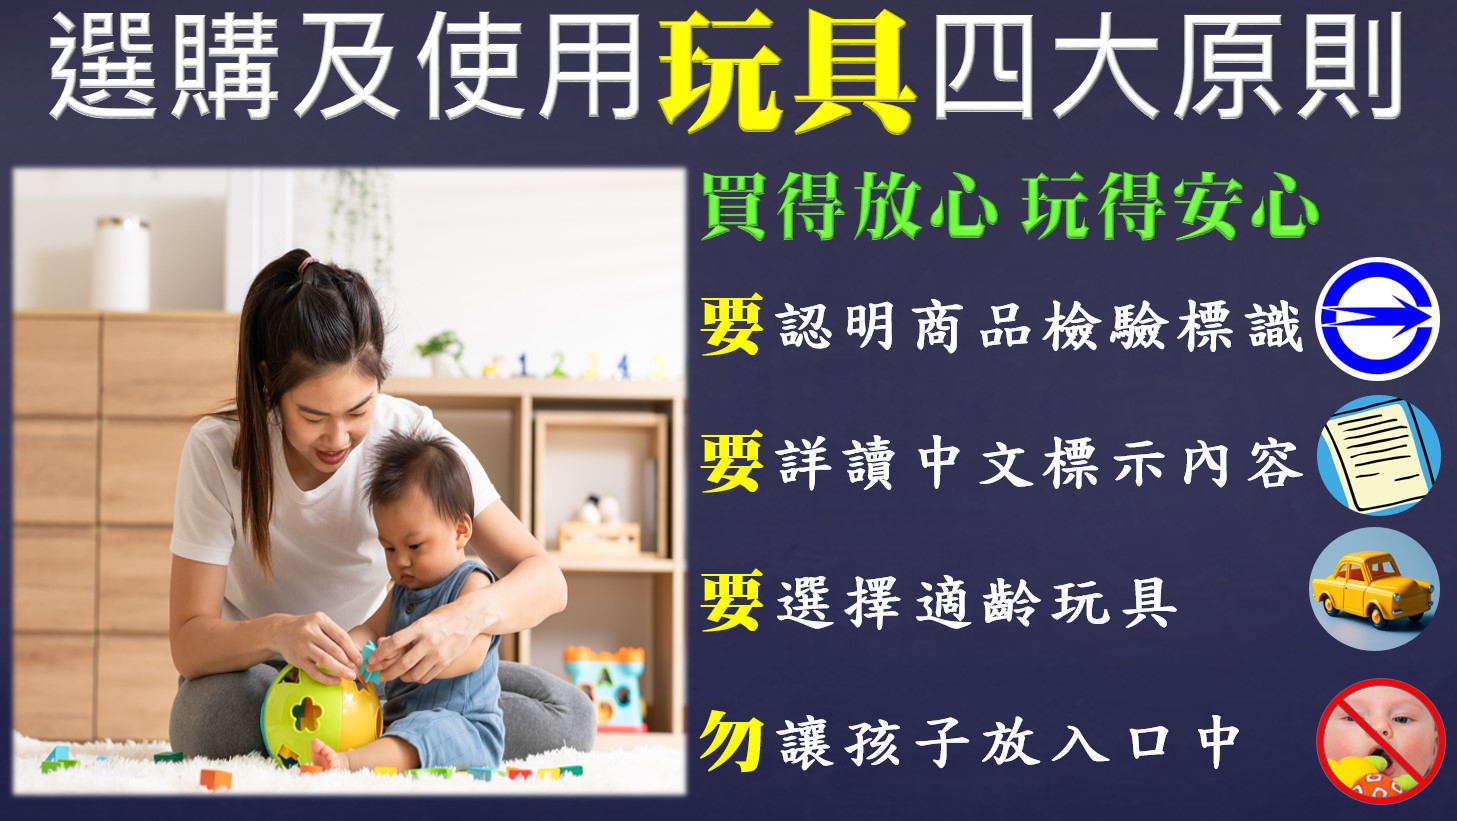 如何選購兒童節禮物?經濟部標準檢驗局臺南分局提供家長們實用小技巧，讓孩子Fun心玩！